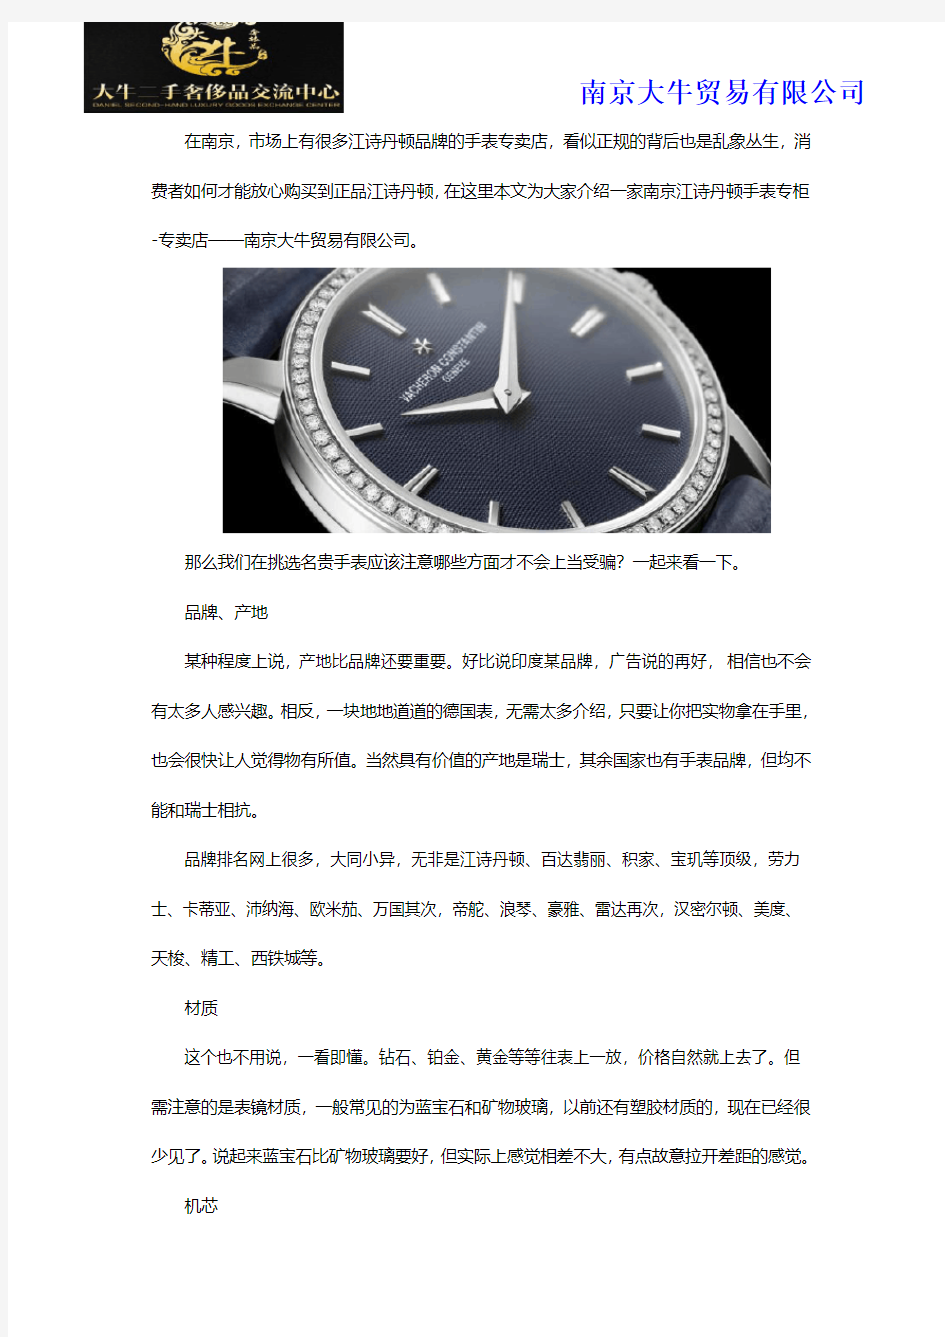 南京江诗丹顿手表专柜-专卖店